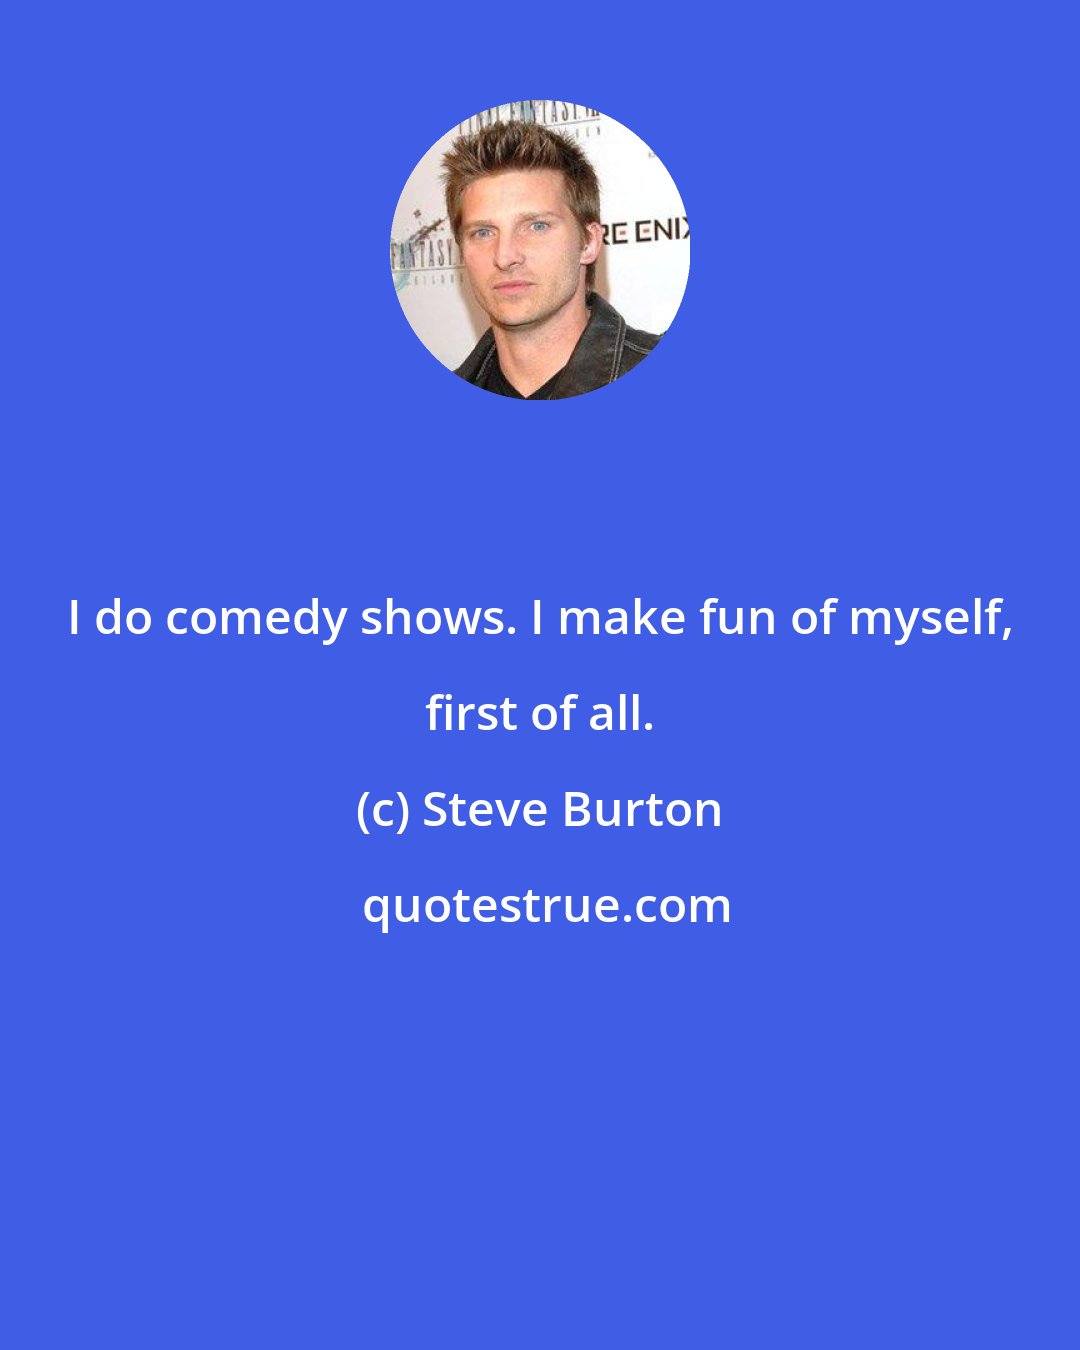 Steve Burton: I do comedy shows. I make fun of myself, first of all.